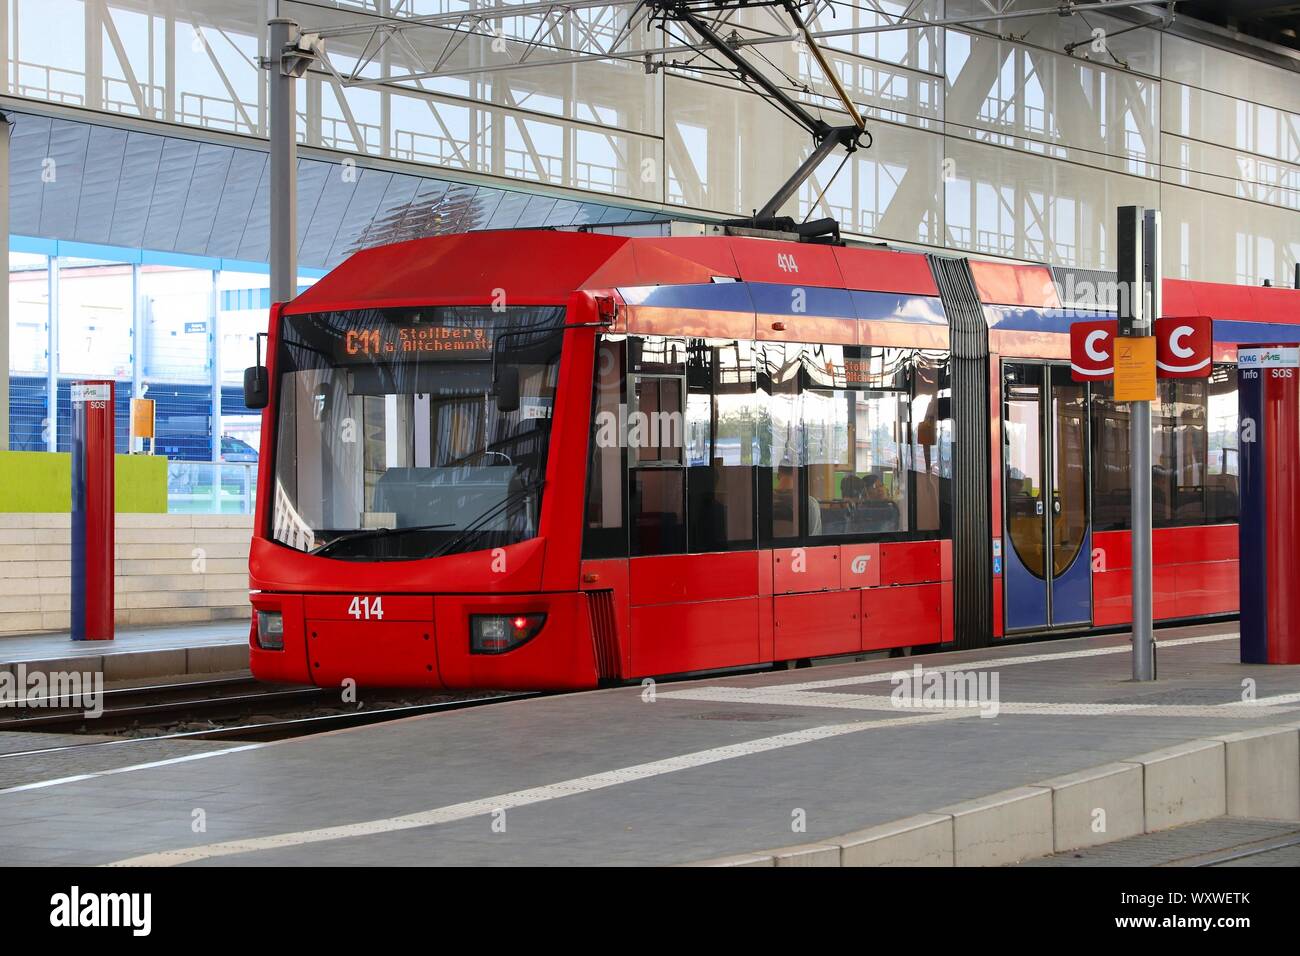 CHEMNITZ, ALLEMAGNE - le 9 mai 2018 : arrêts de tramway de la gare principale (Hauptbahnhof) à Chemnitz, Allemagne. Chemnitz est la 3ème plus grande ville de la Stat libre Banque D'Images